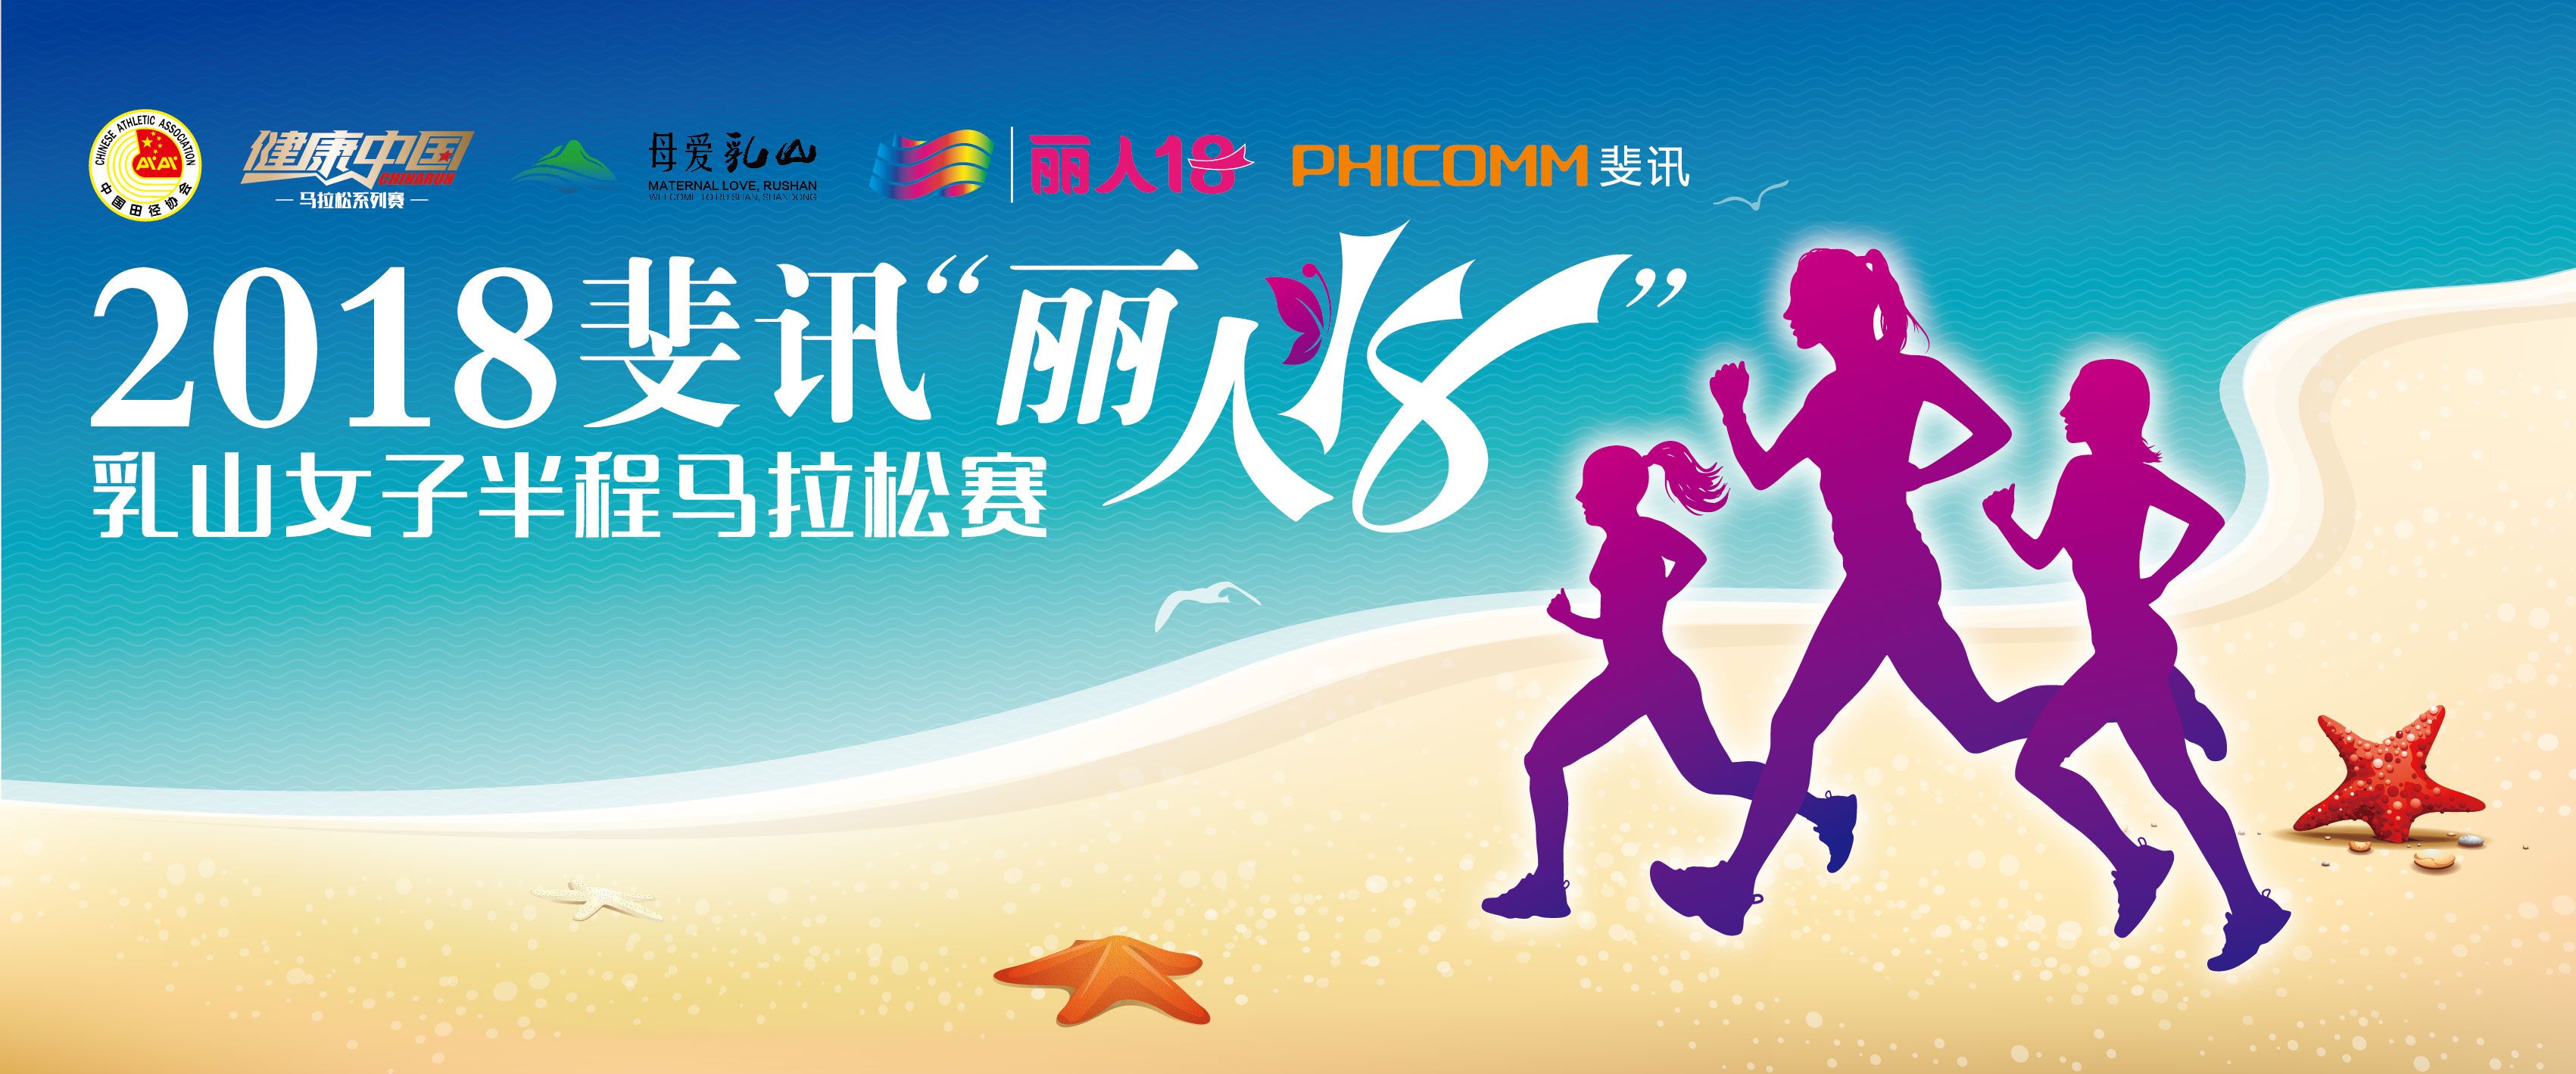 2018斐讯“丽人18”乳山女子半程马拉松赛暨健康中国马拉松系列赛